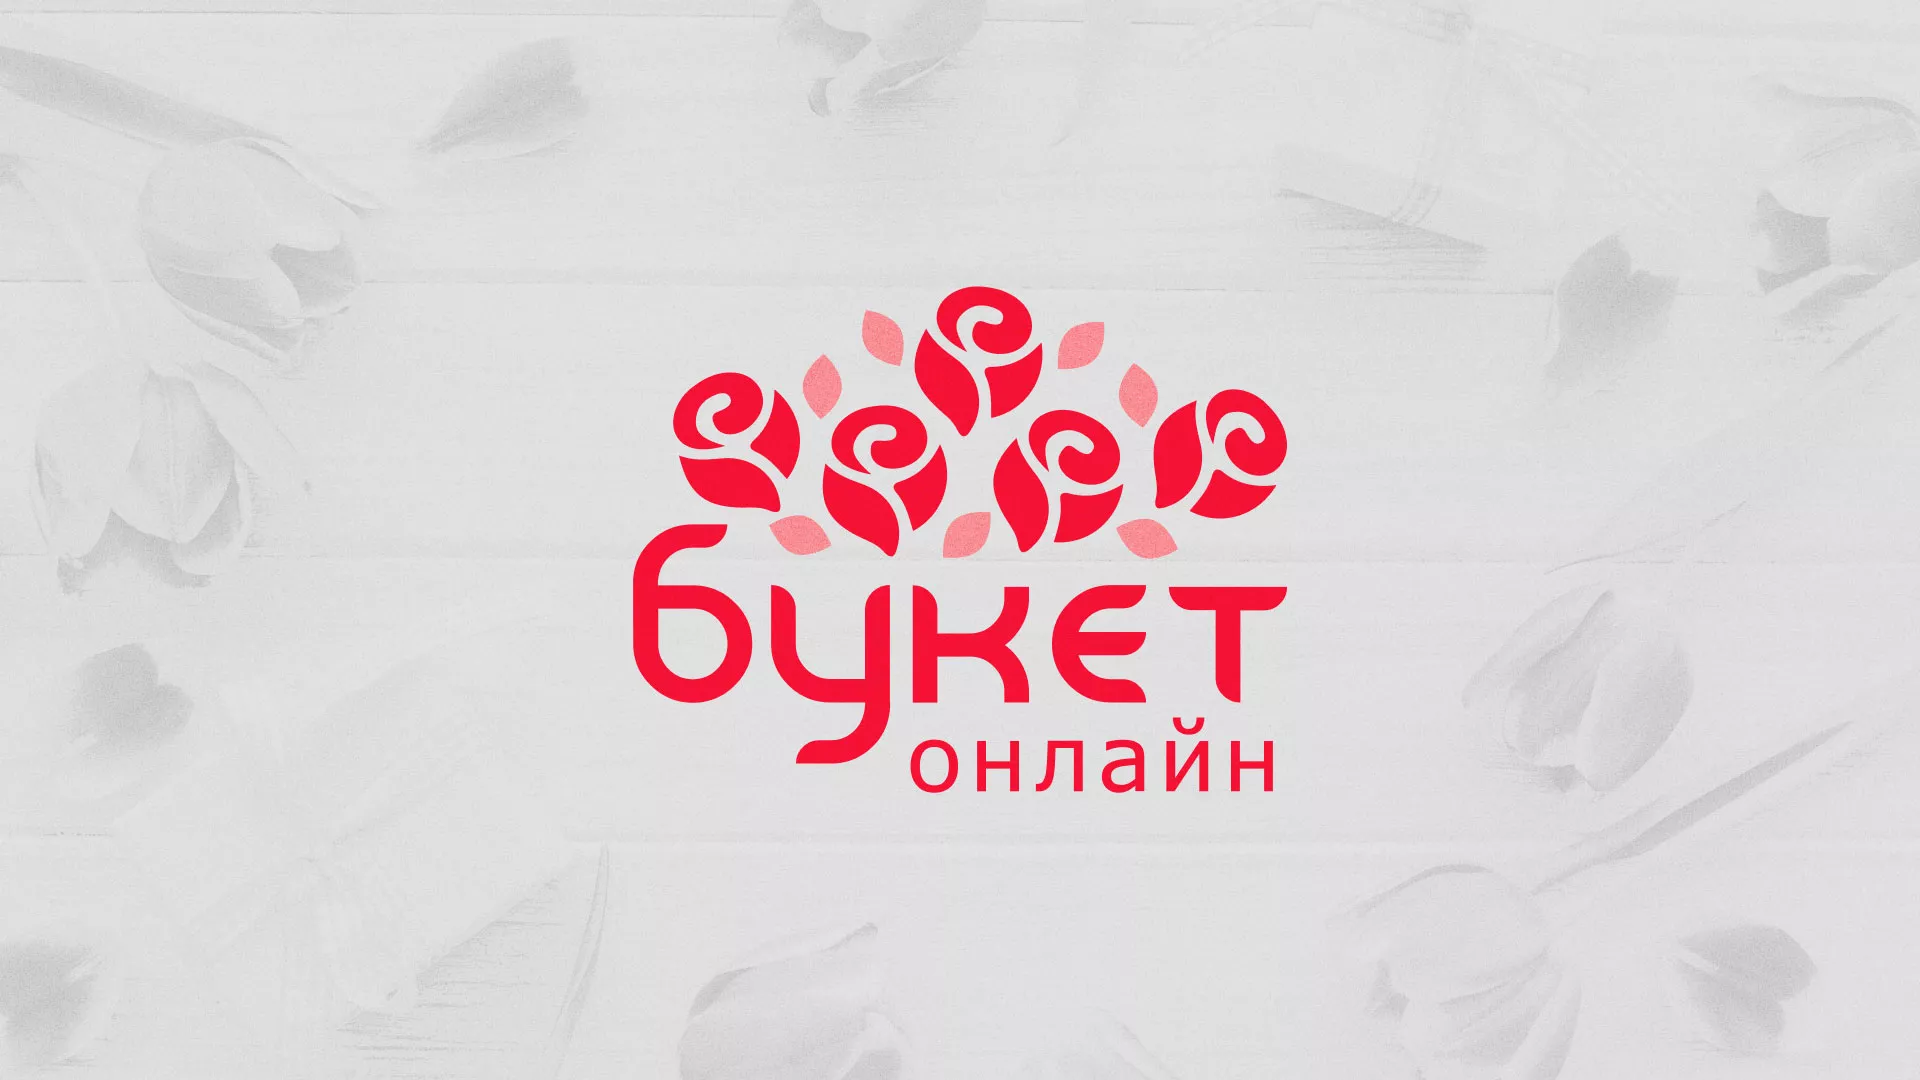 Создание интернет-магазина «Букет-онлайн» по цветам в Воронеже